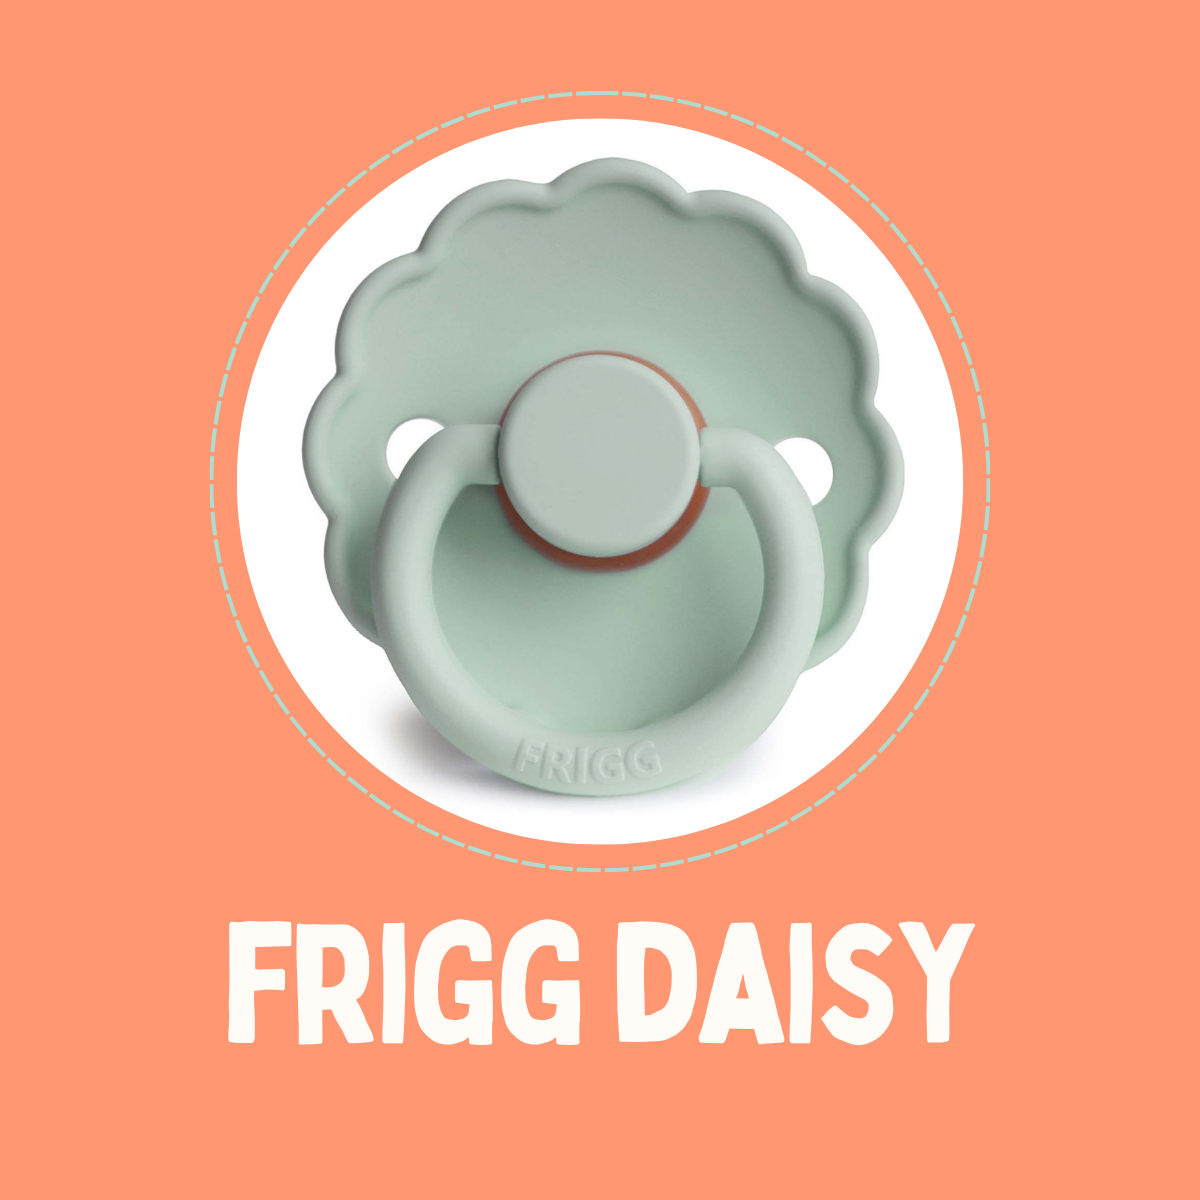 FRIGG Daisy